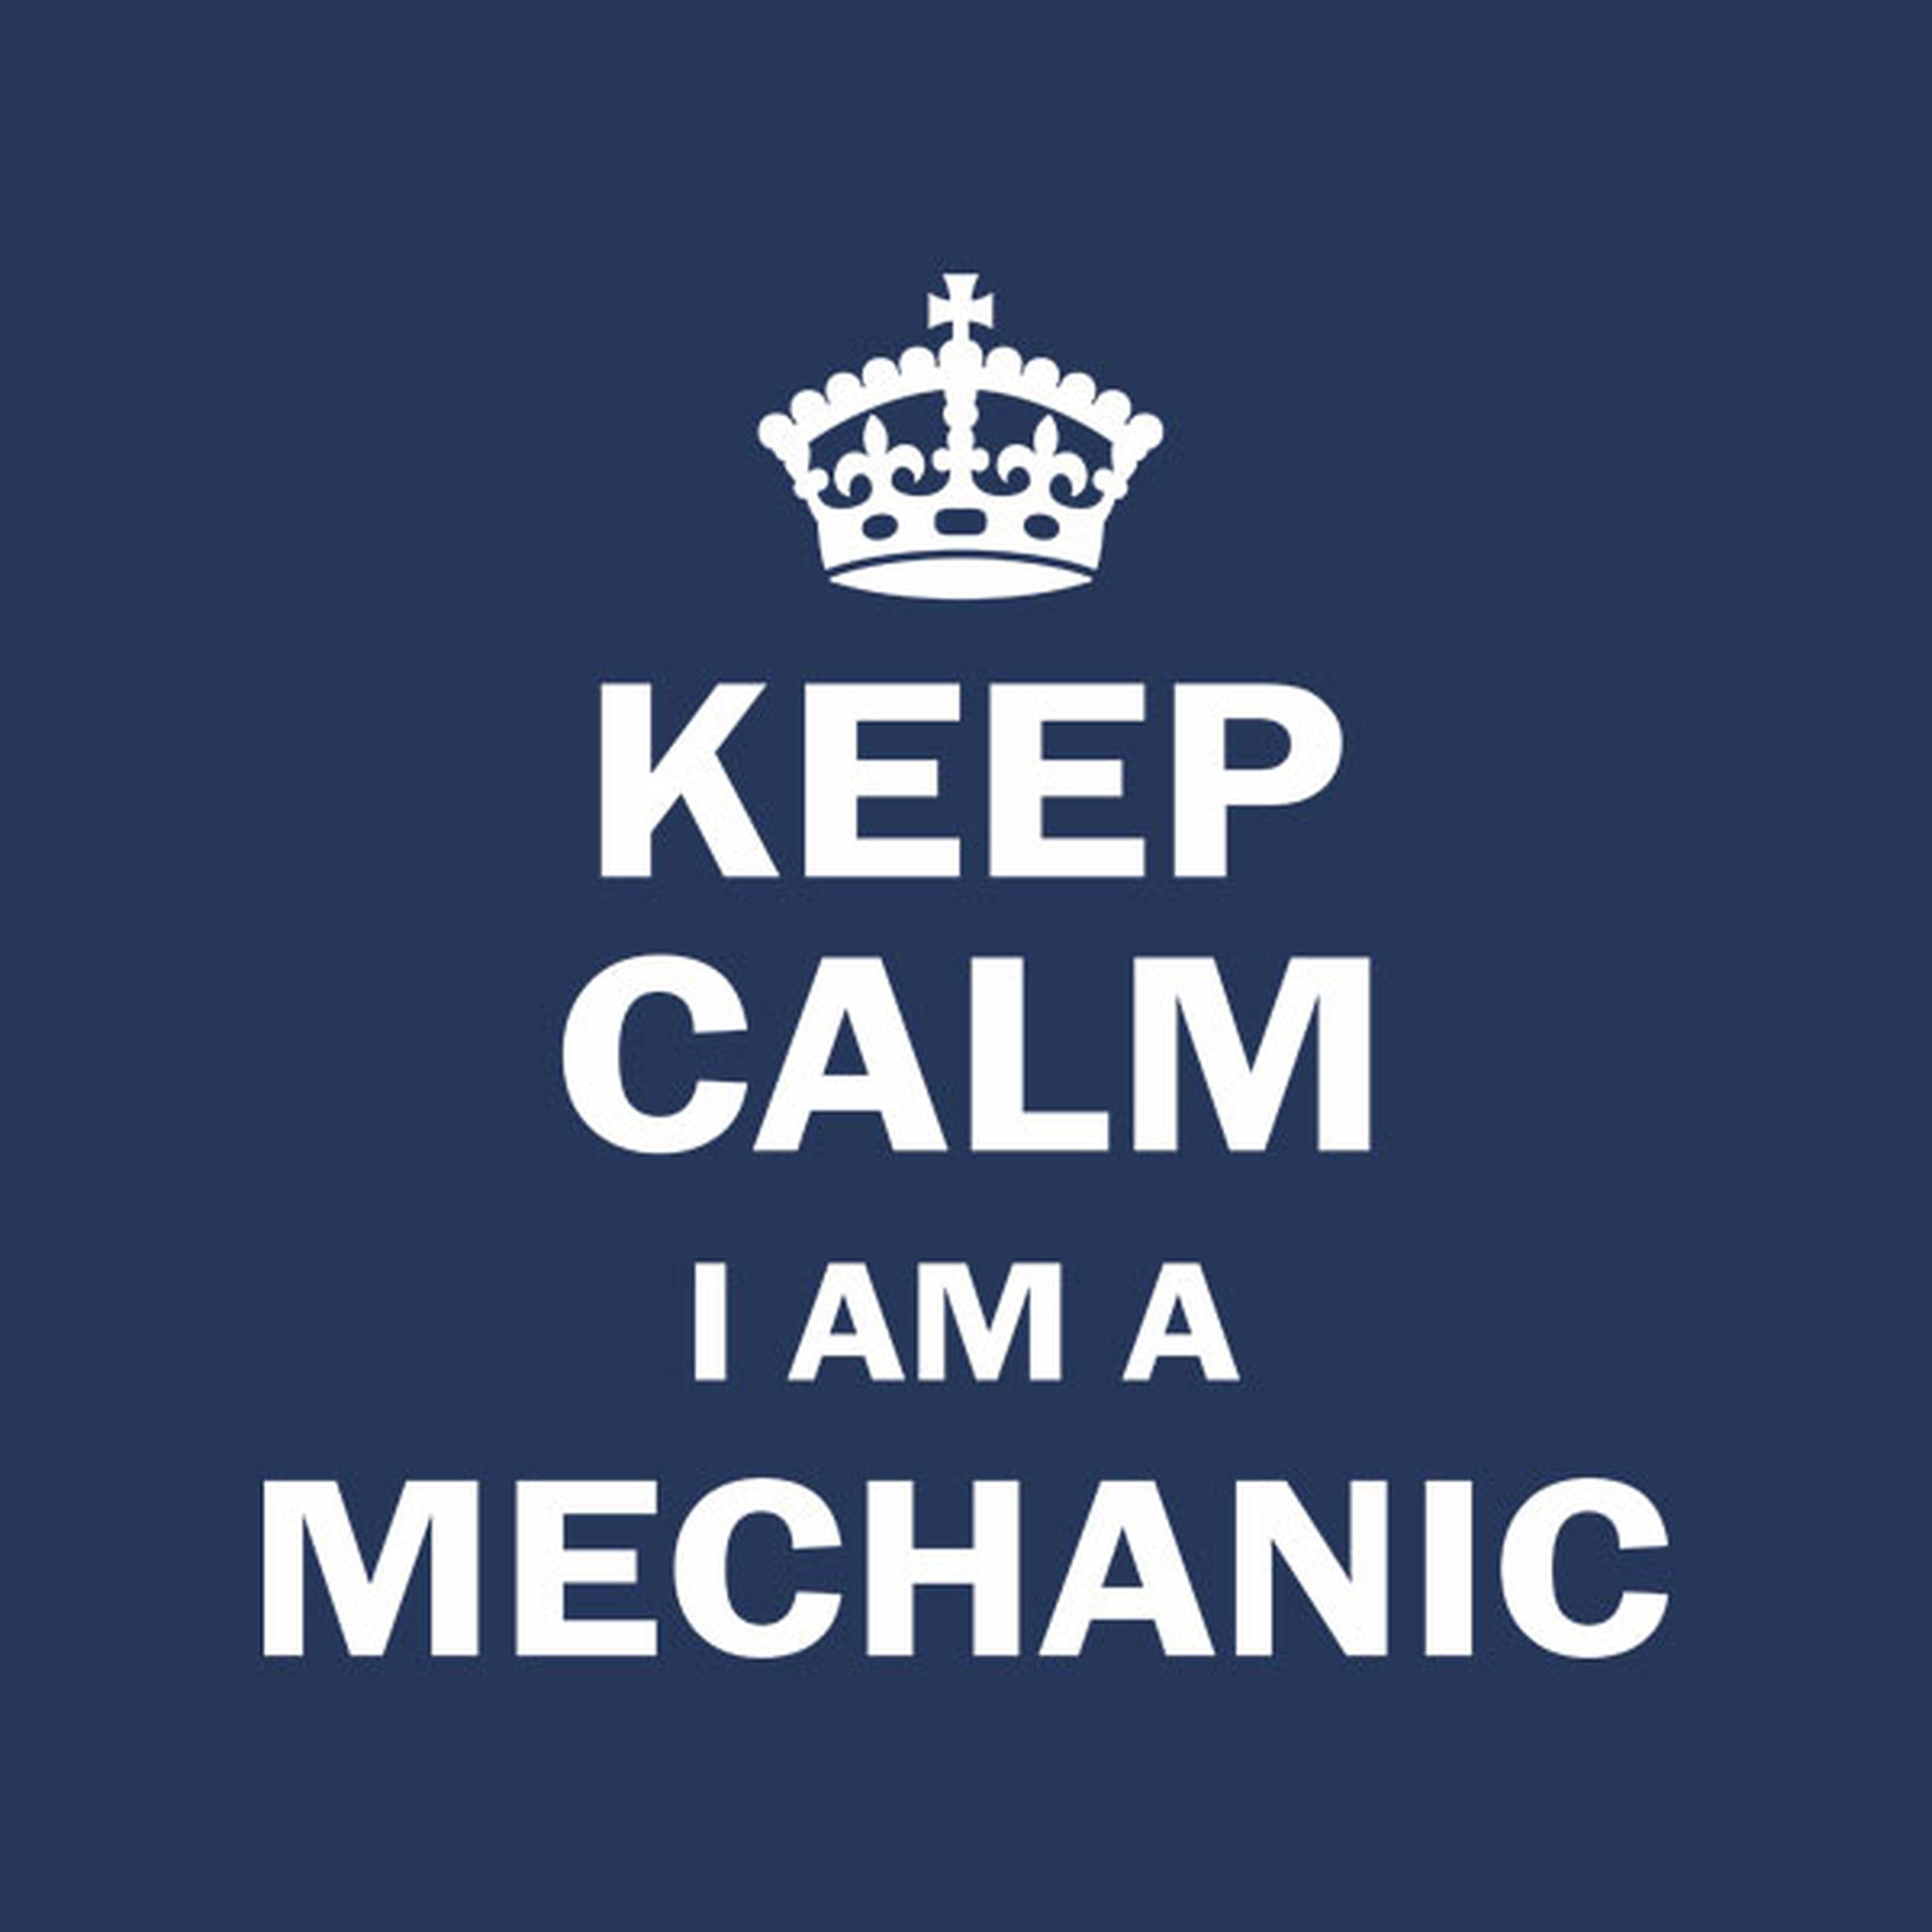 Keep calm I am a mechanic - T-shirt